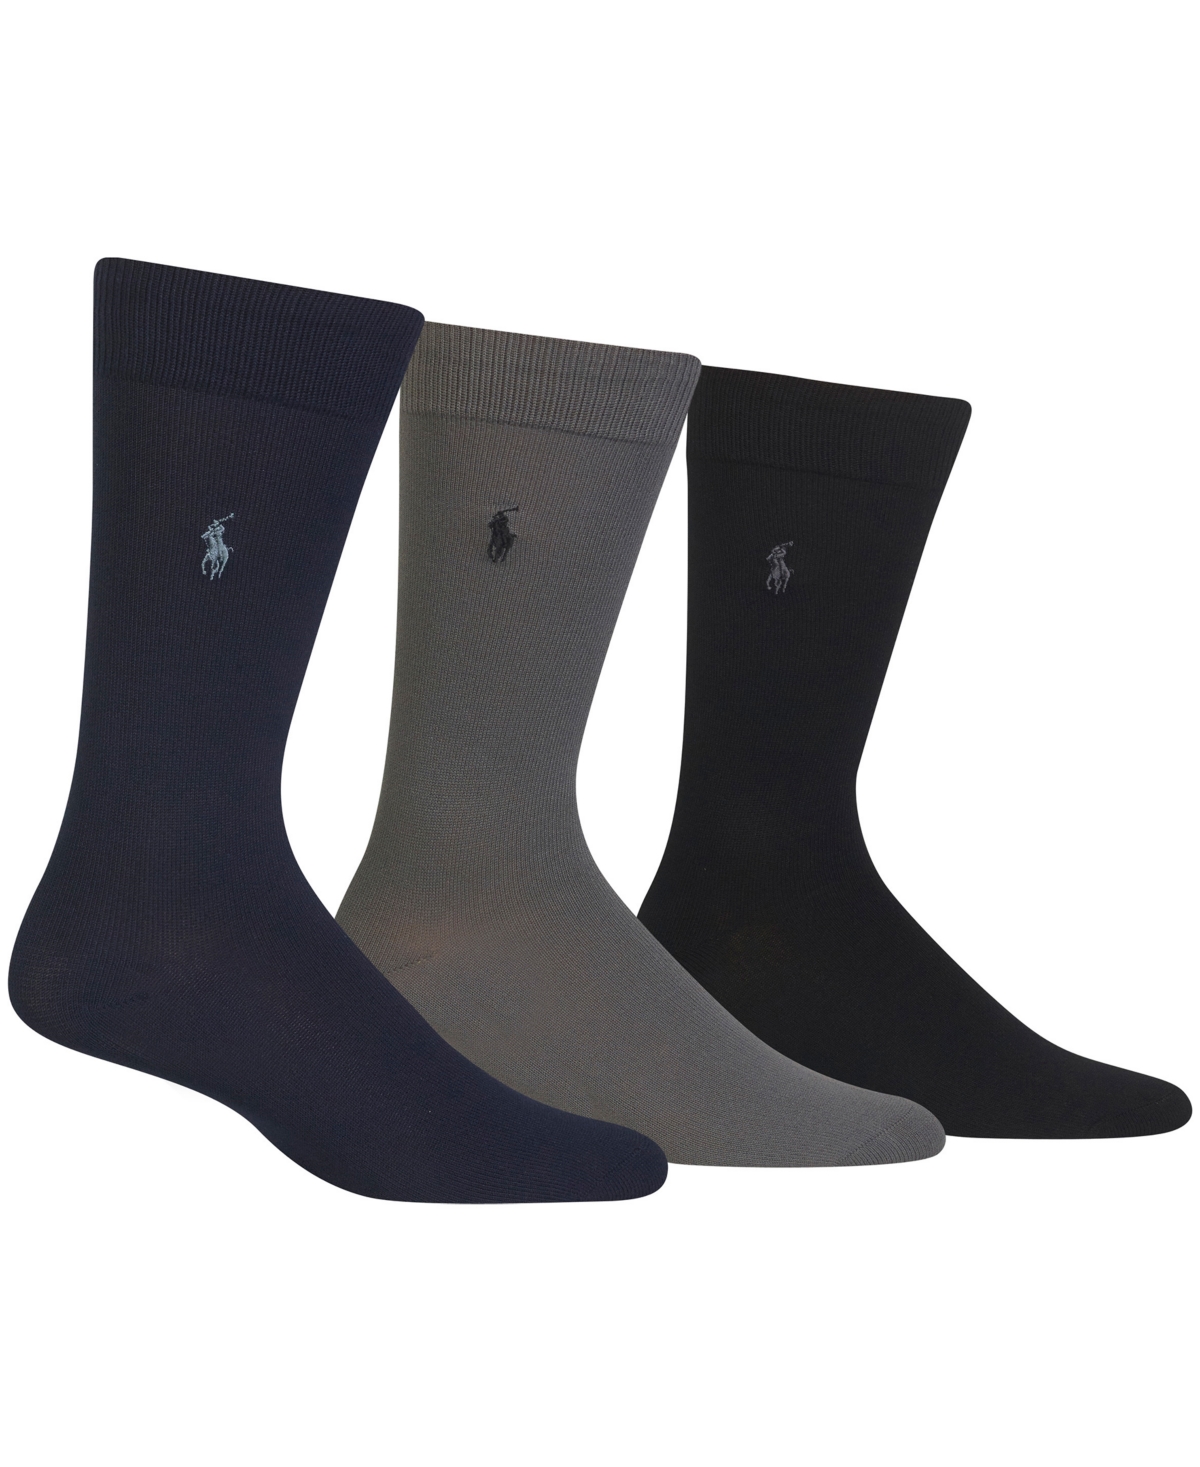 Polo Ralph Lauren Men's 3 Pack Super-soft Dress Socks In Grey,navy,black